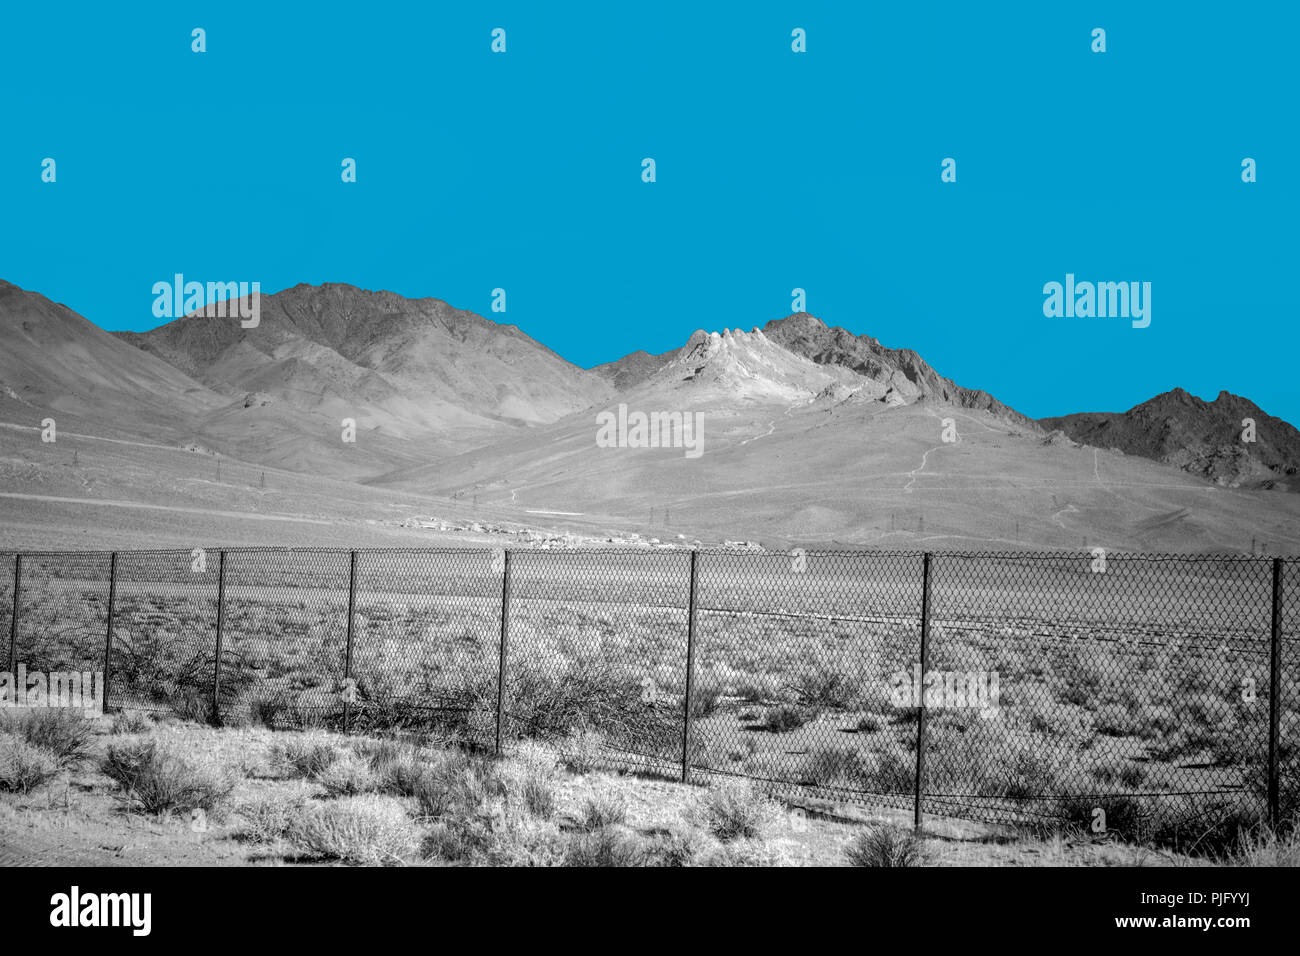 Une clôture divisant le paysage désertique avec des montagnes stériles sous un ciel bleu. Banque D'Images